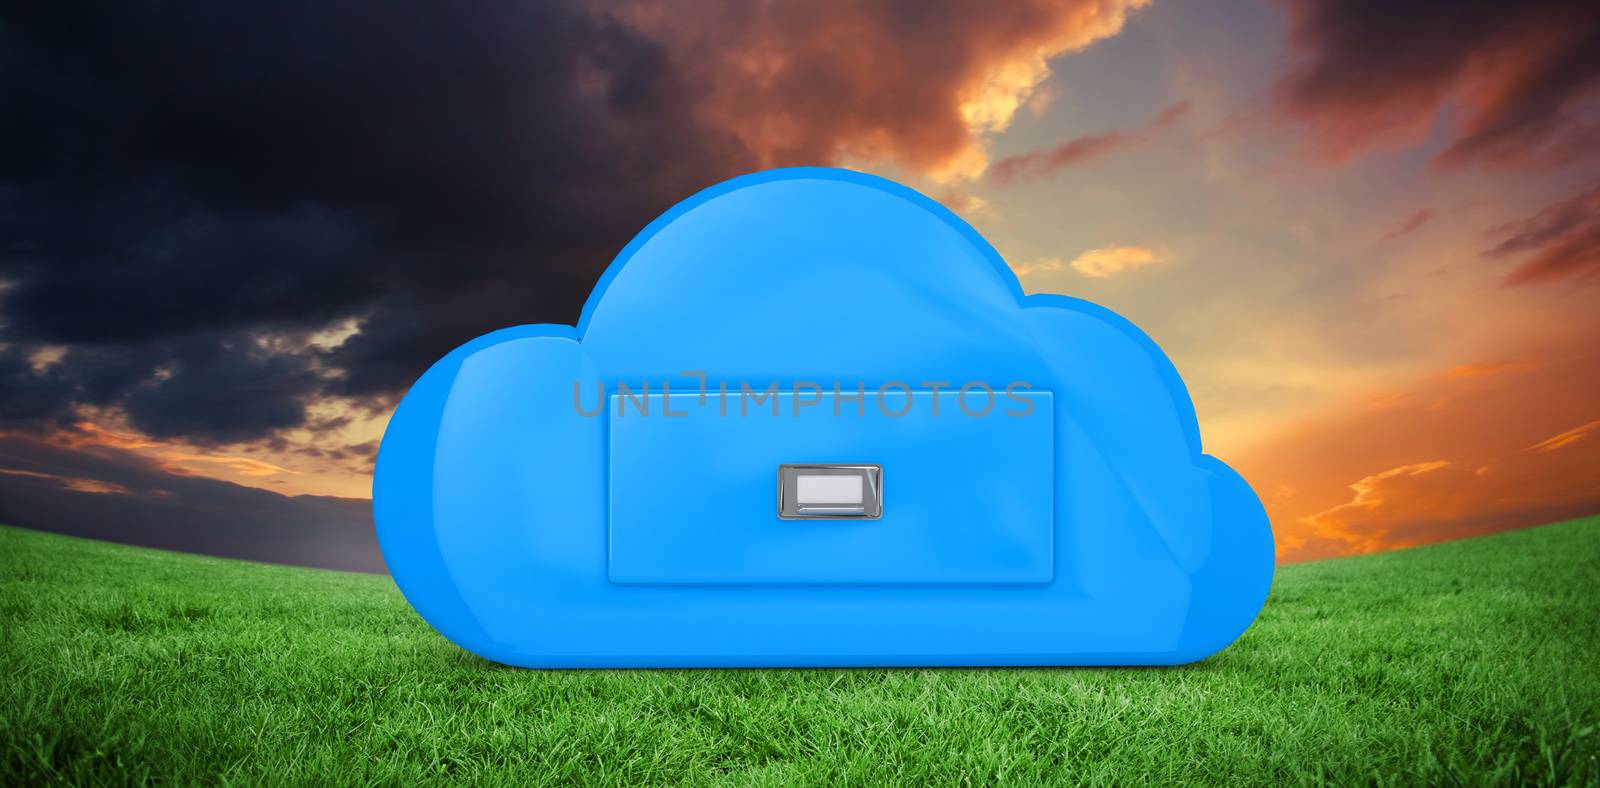 Cloud computing drawer against green field under orange sky